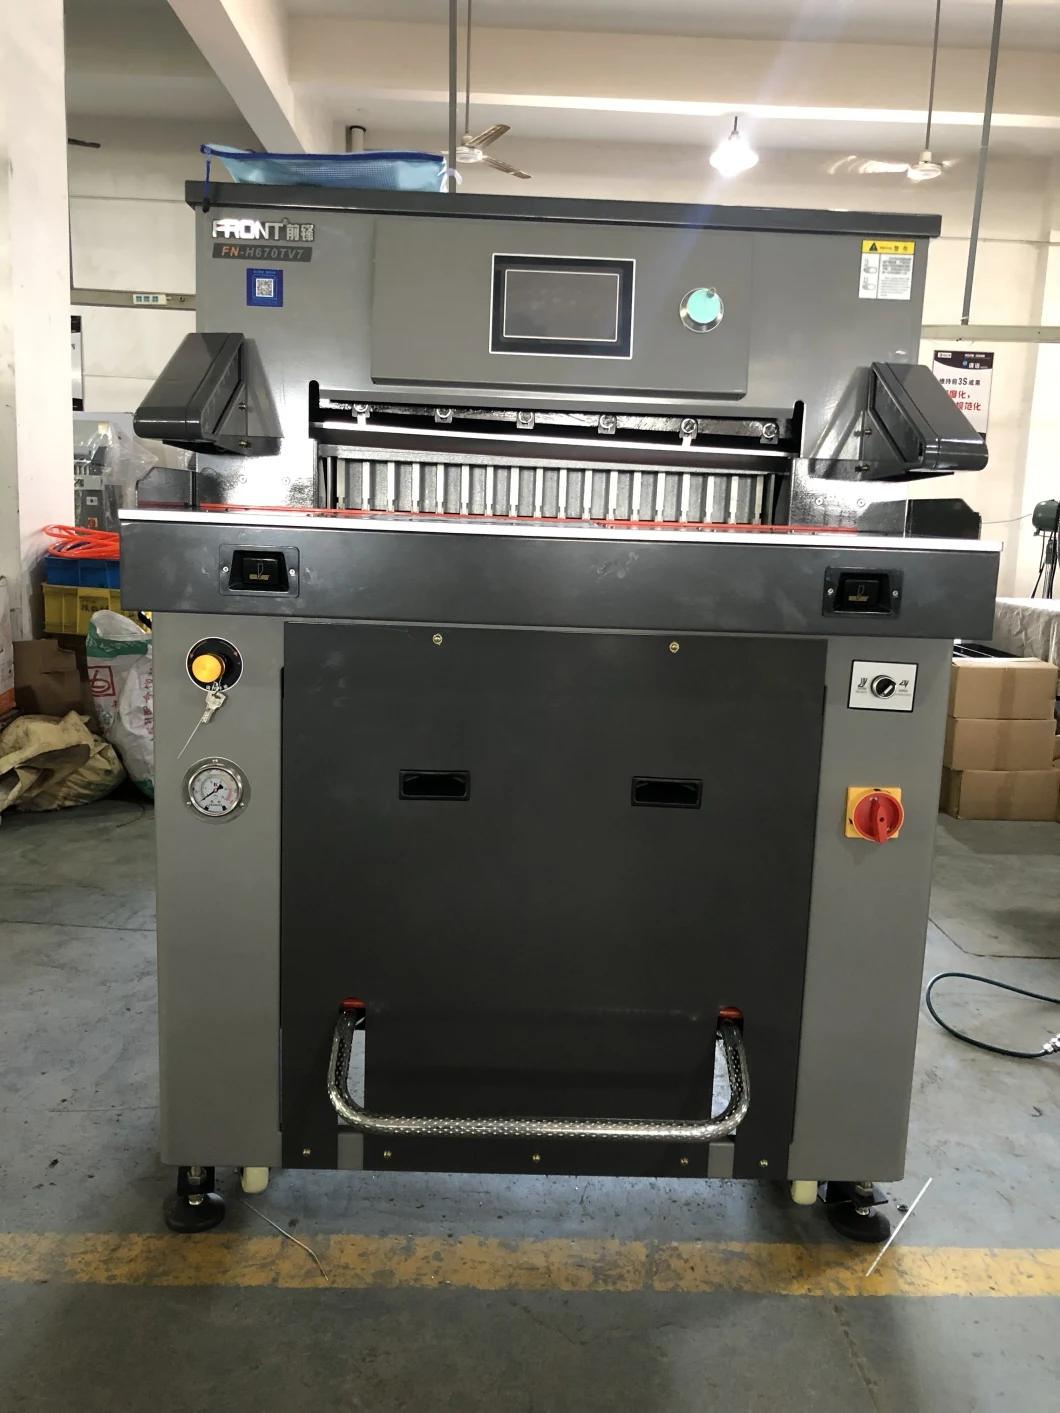 520mm Program Control Hydraulic Guillotine Cutter/Paper Cutting Machine Price